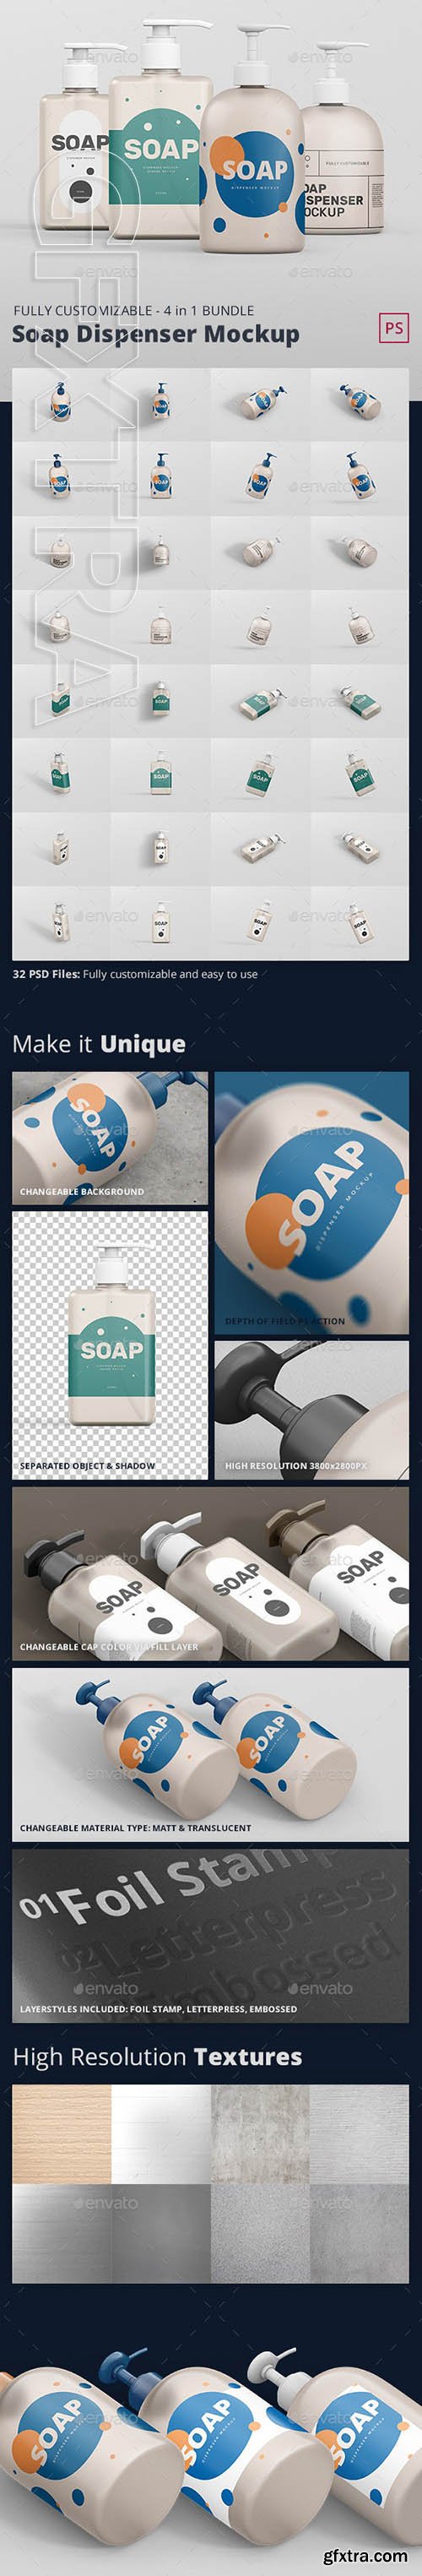 GraphicRiver - Soap Dispenser Mockup Bundle 24244693